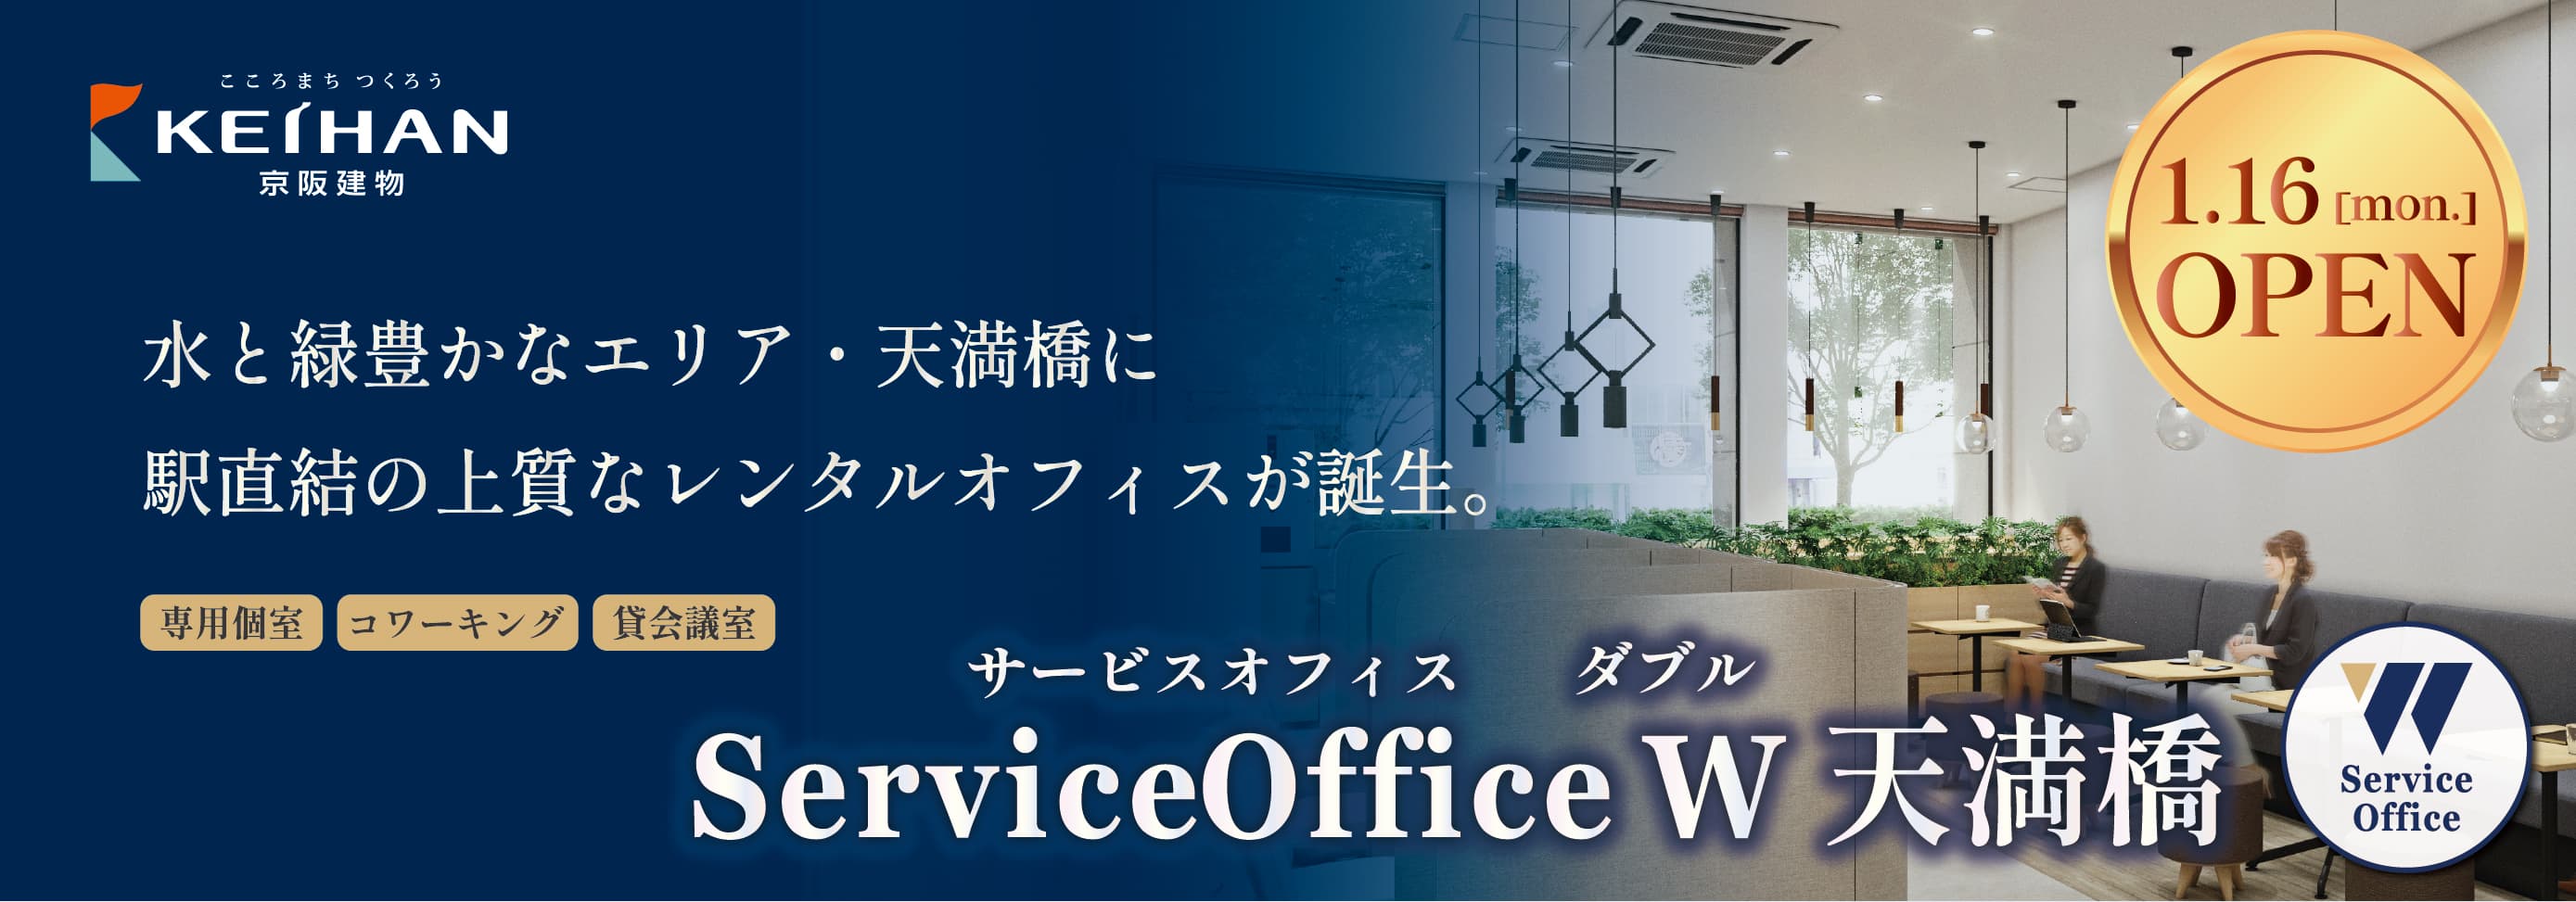 天満橋のレンタルオフィス【ServiceOffice W 天満橋】